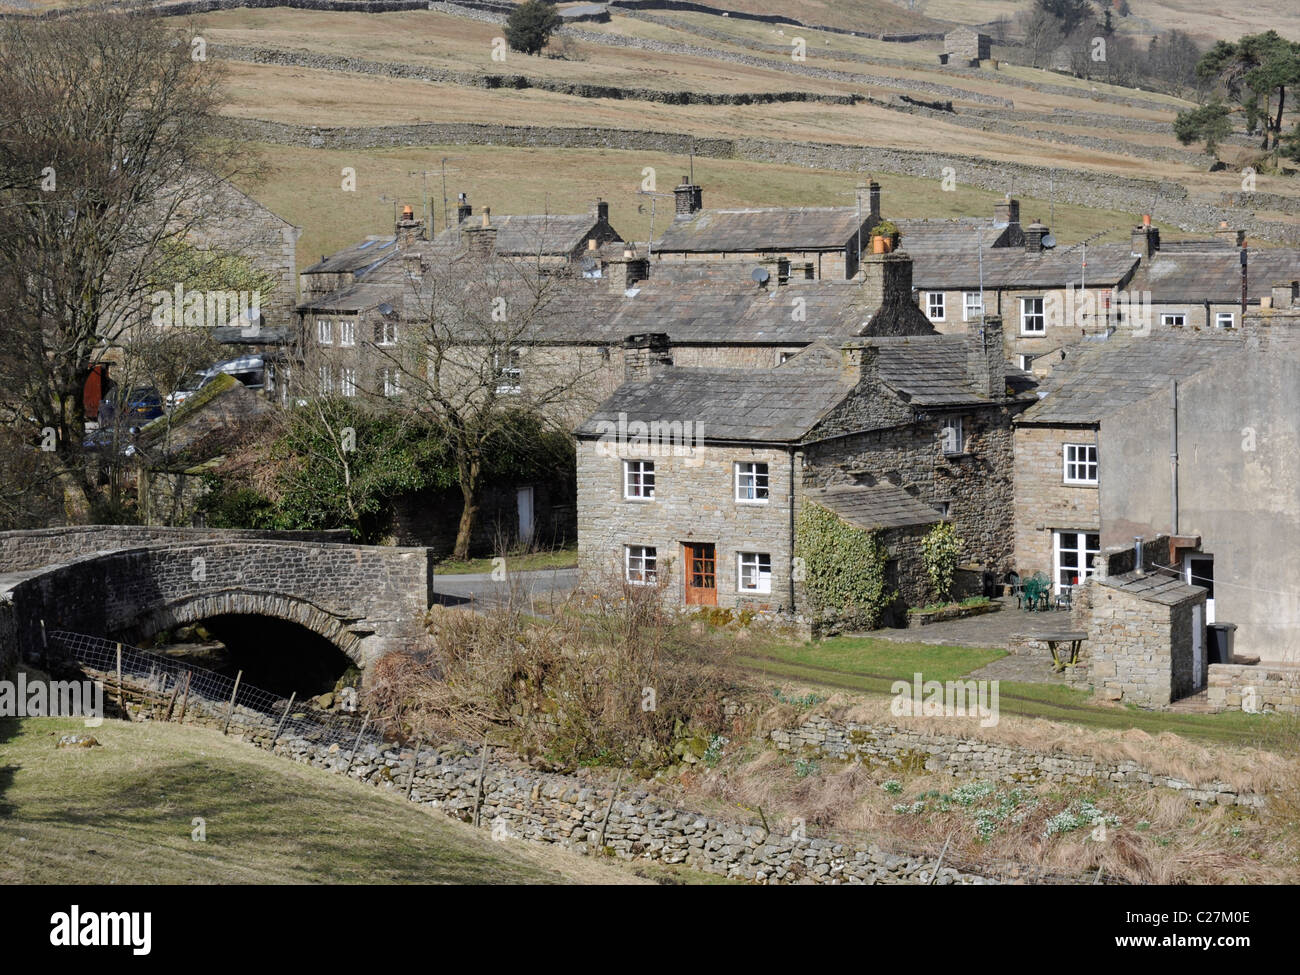 The village of Thwaite, Swaledale, Yorkshire Dales, England, UK Stock Photo